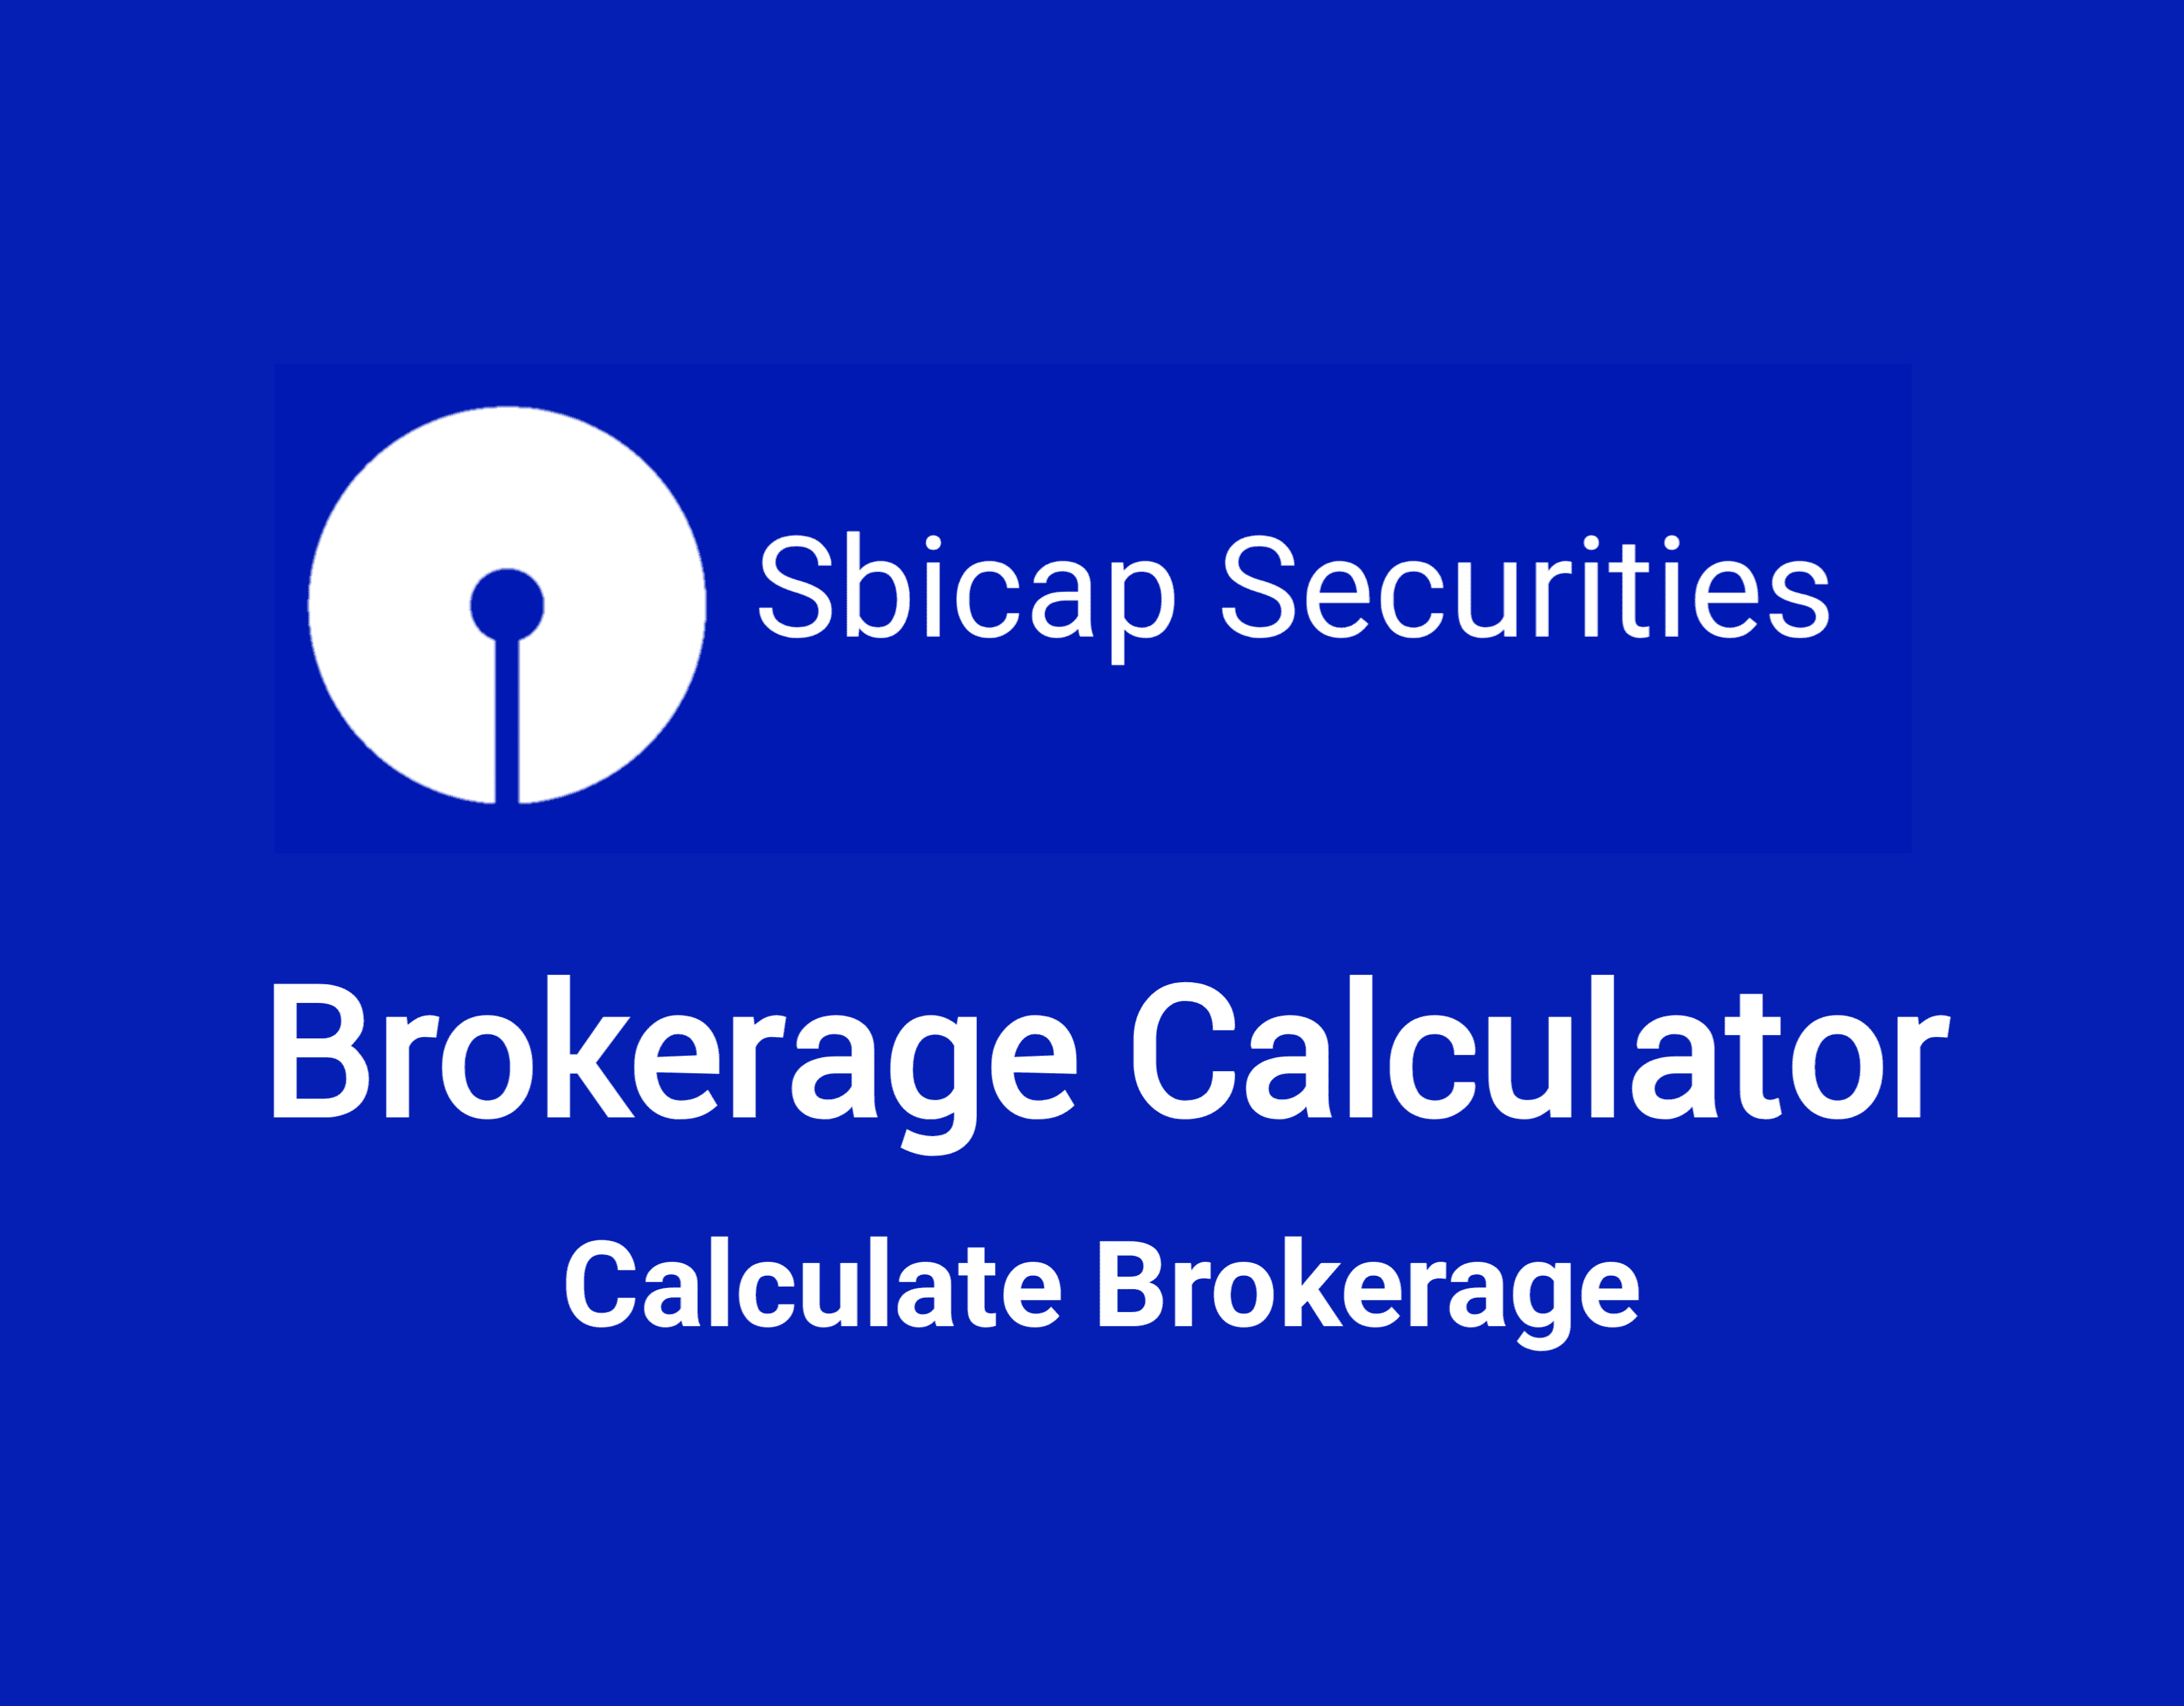 Sbicap Brokerage Calculator